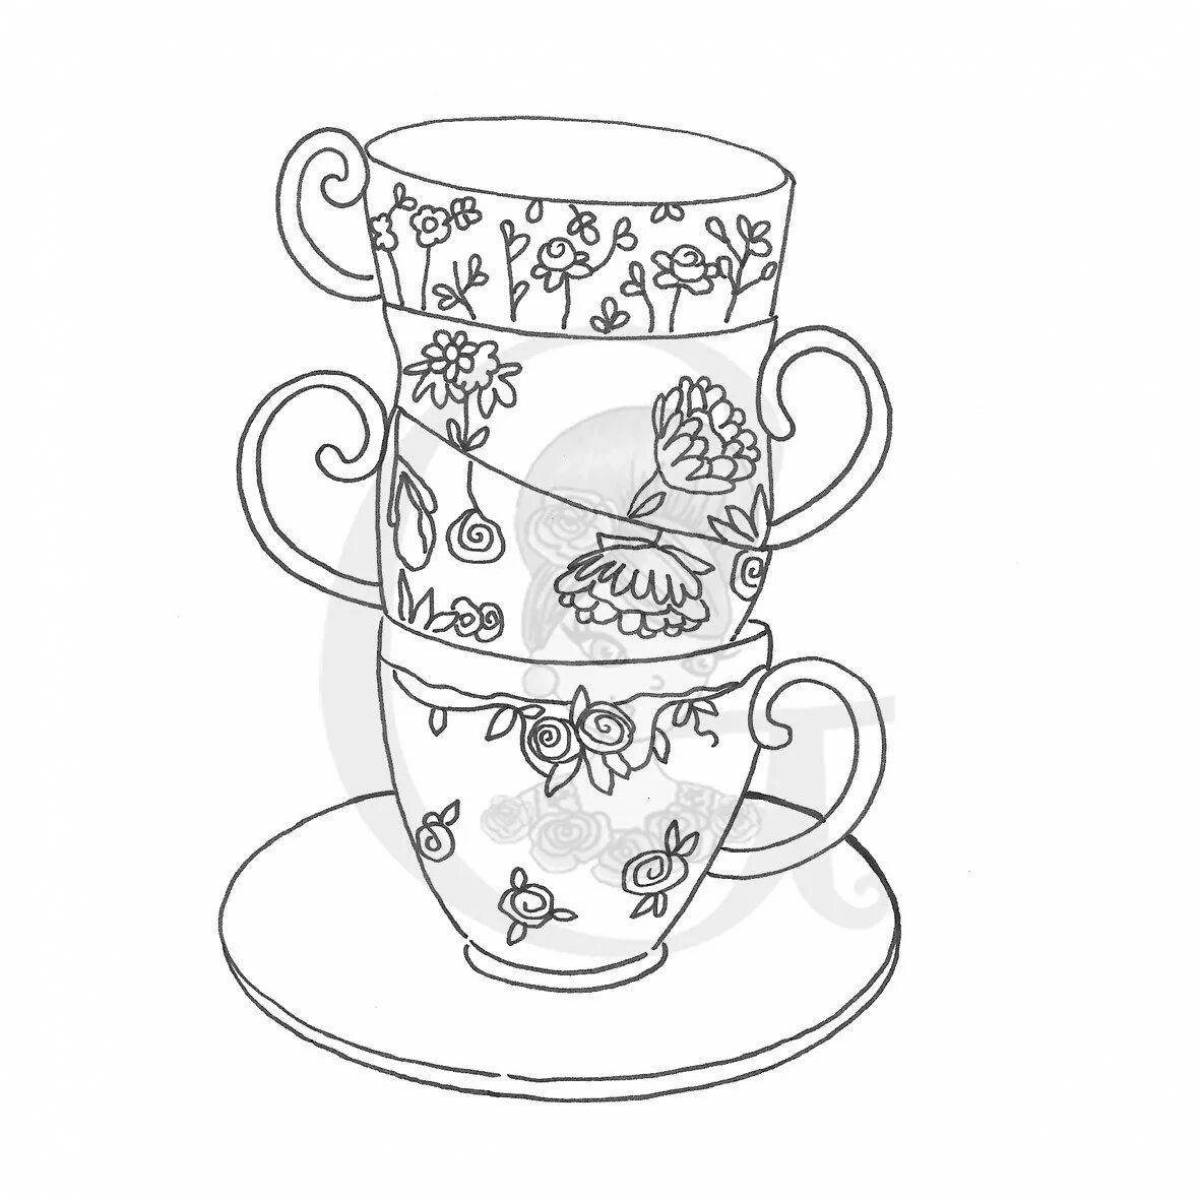 Увлекательная раскраска «чашка чая» для начинающих